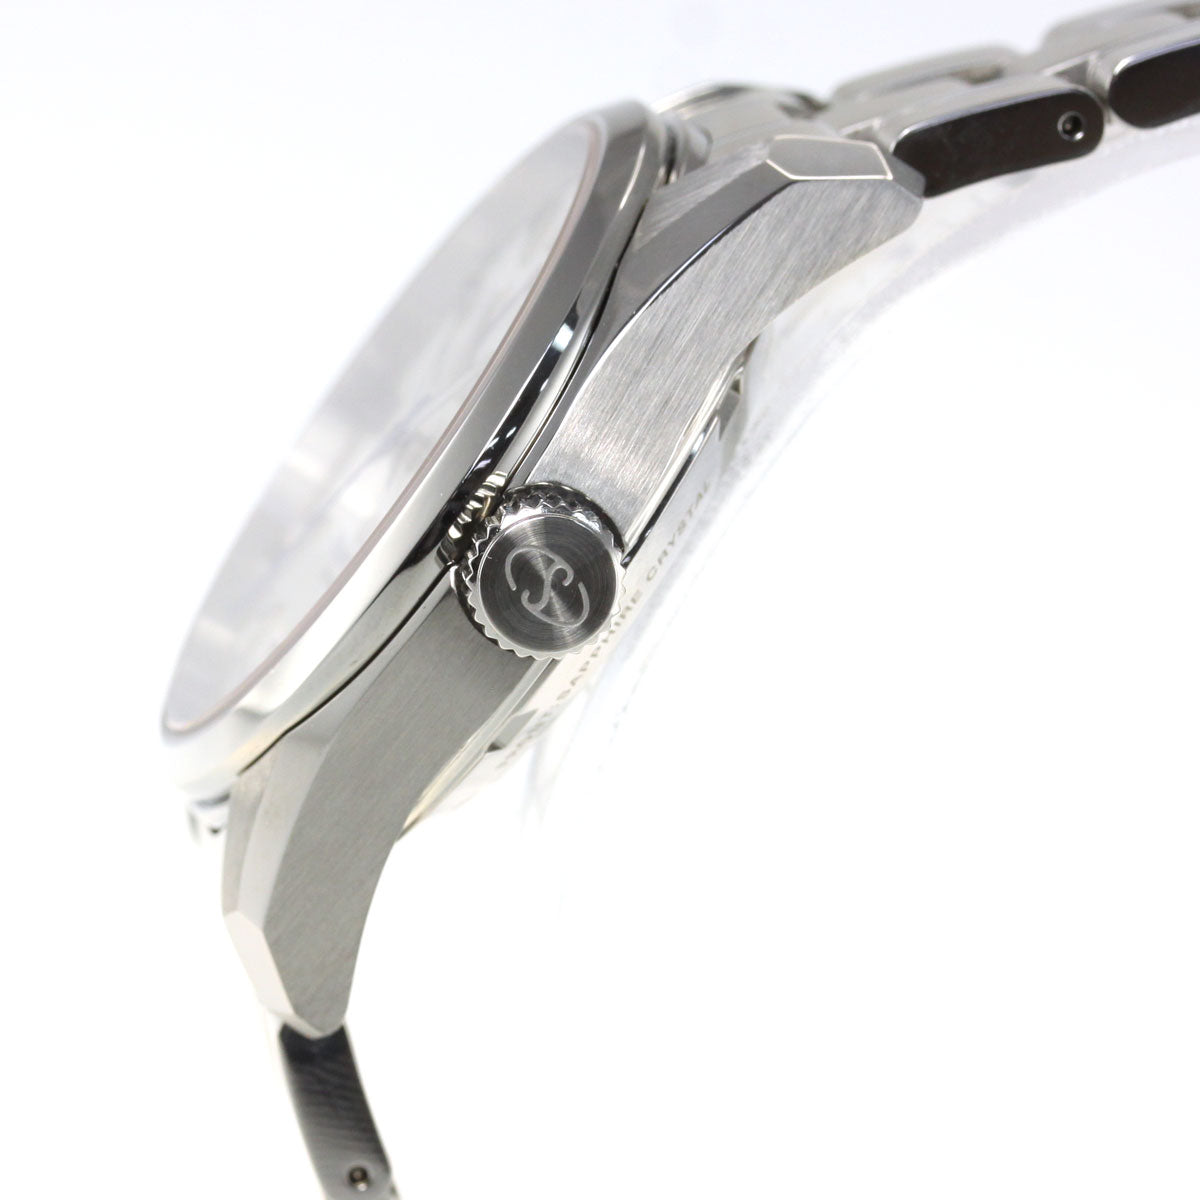 オリエントスター ORIENT STAR 腕時計 メンズ 自動巻き 機械式 コンテンポラリー CONTEMPORALY スタンダード RK-AU0006S